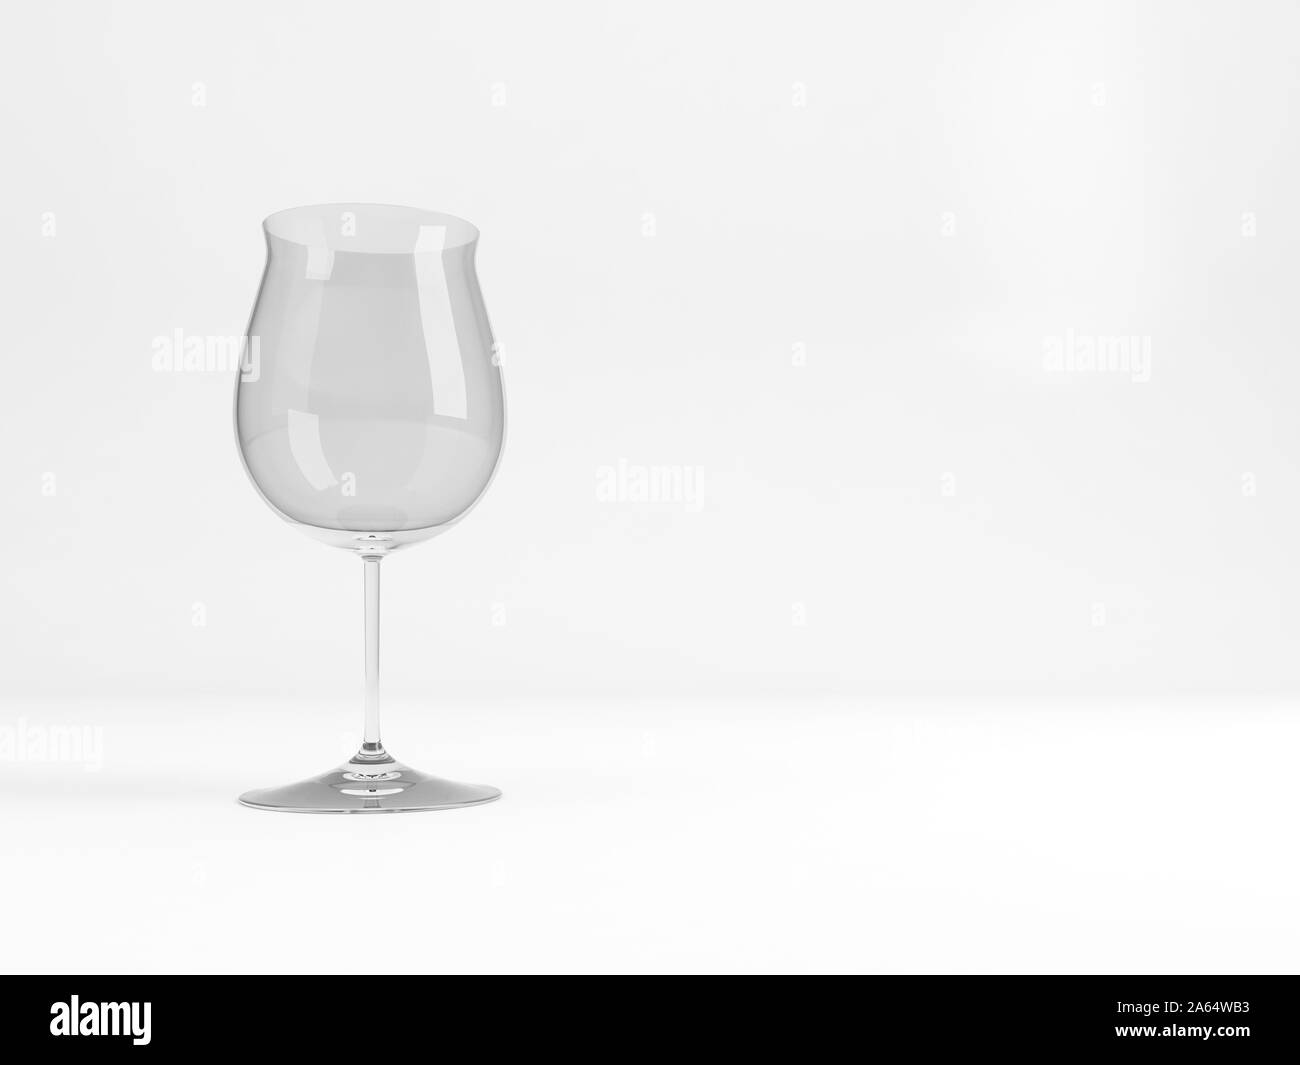 Standard vuote Borgogna il vino rosso di vetro con una morbida ombra si erge su sfondo bianco, rendering 3D illustrazione Foto Stock